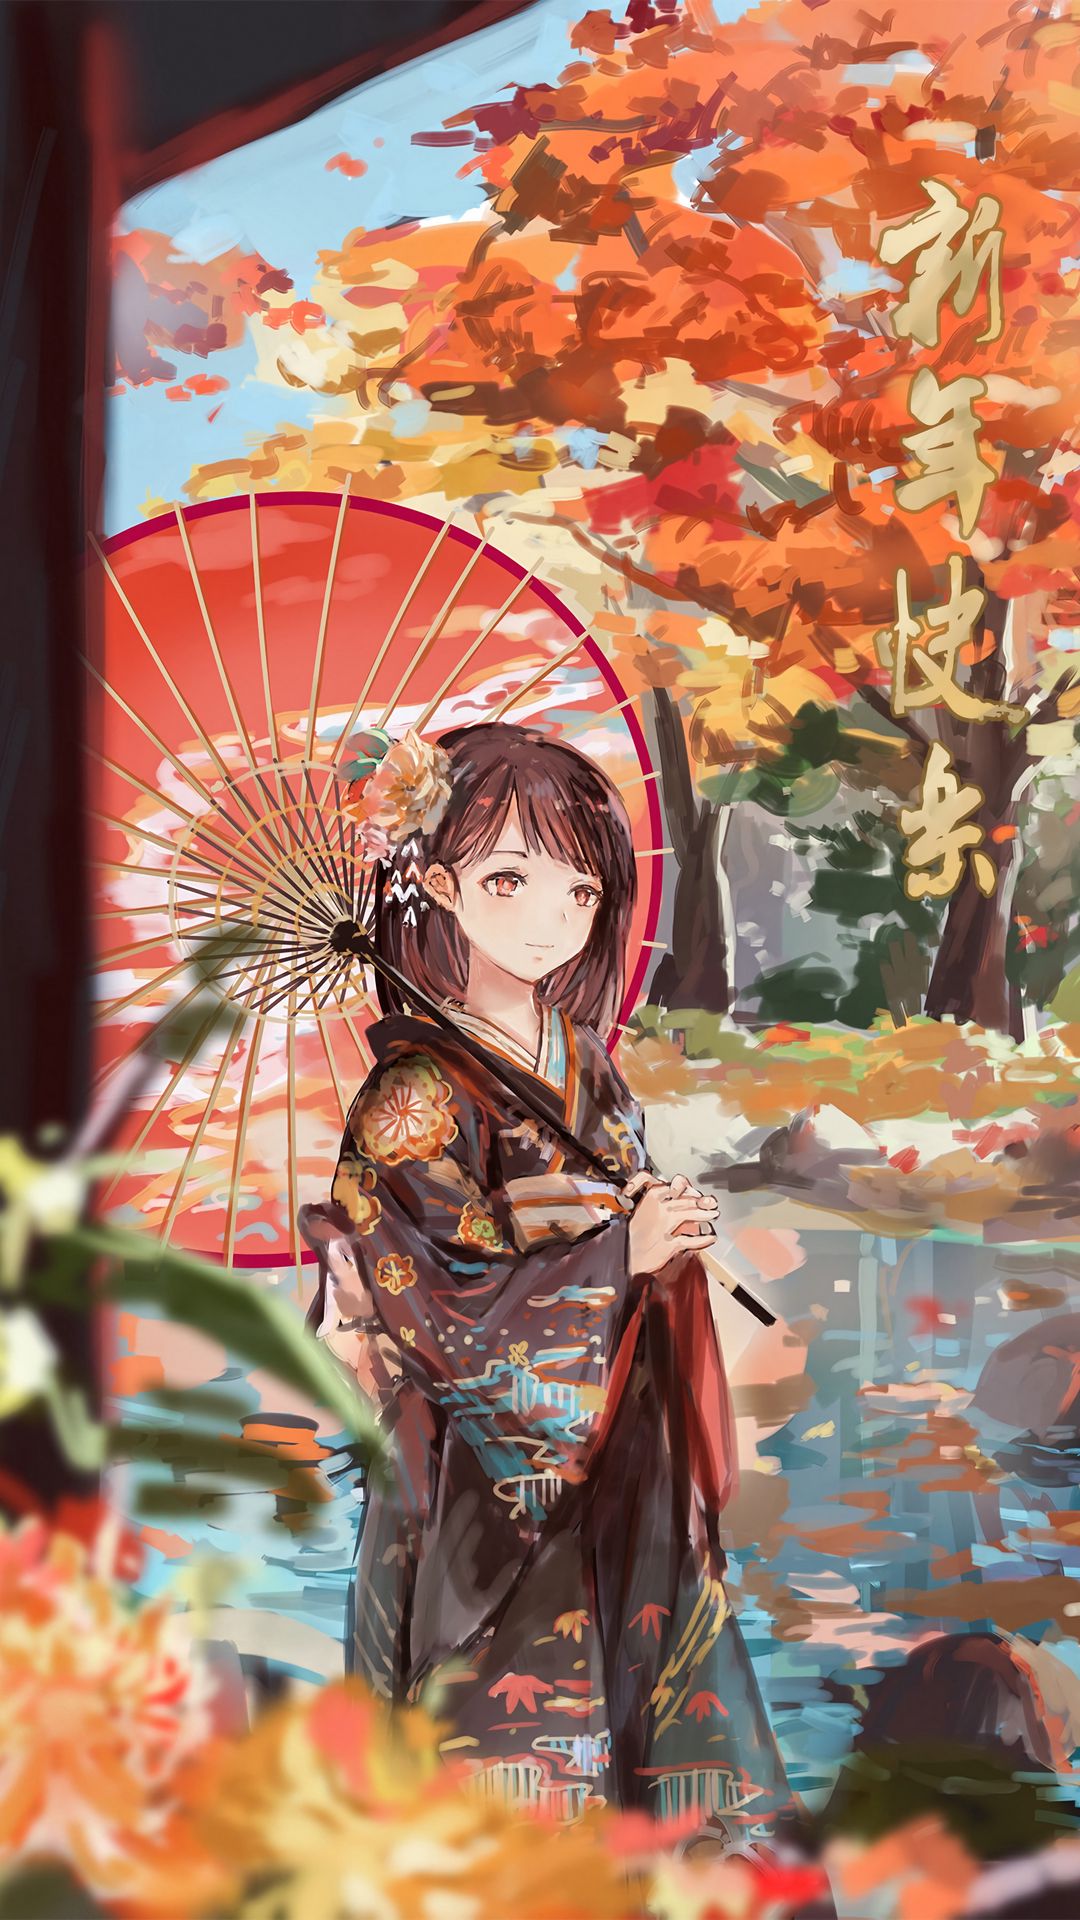 Anime for Phone Wallpapers - Top Những Hình Ảnh Đẹp